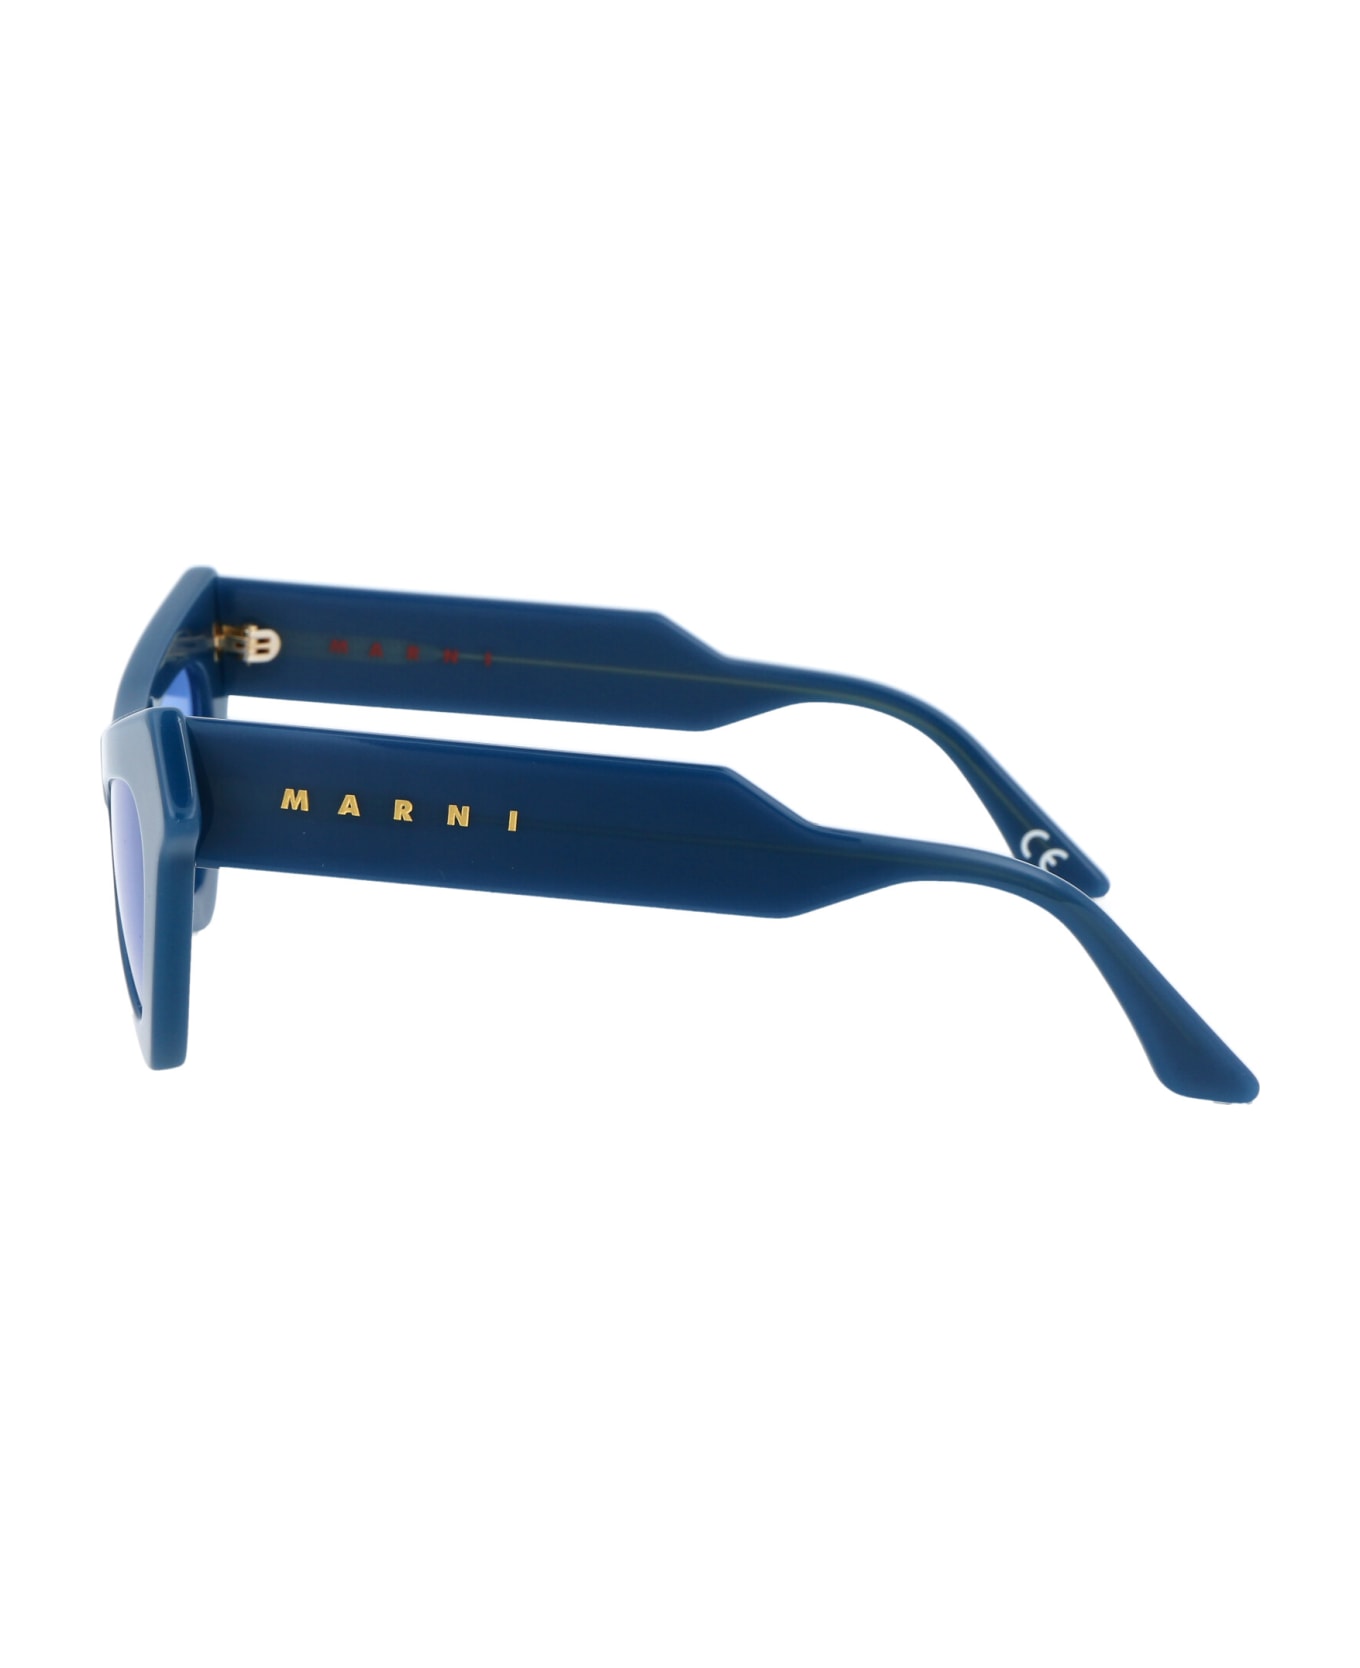 Marni Eyewear Fairy Pools Sunglasses - POOLS BLUE